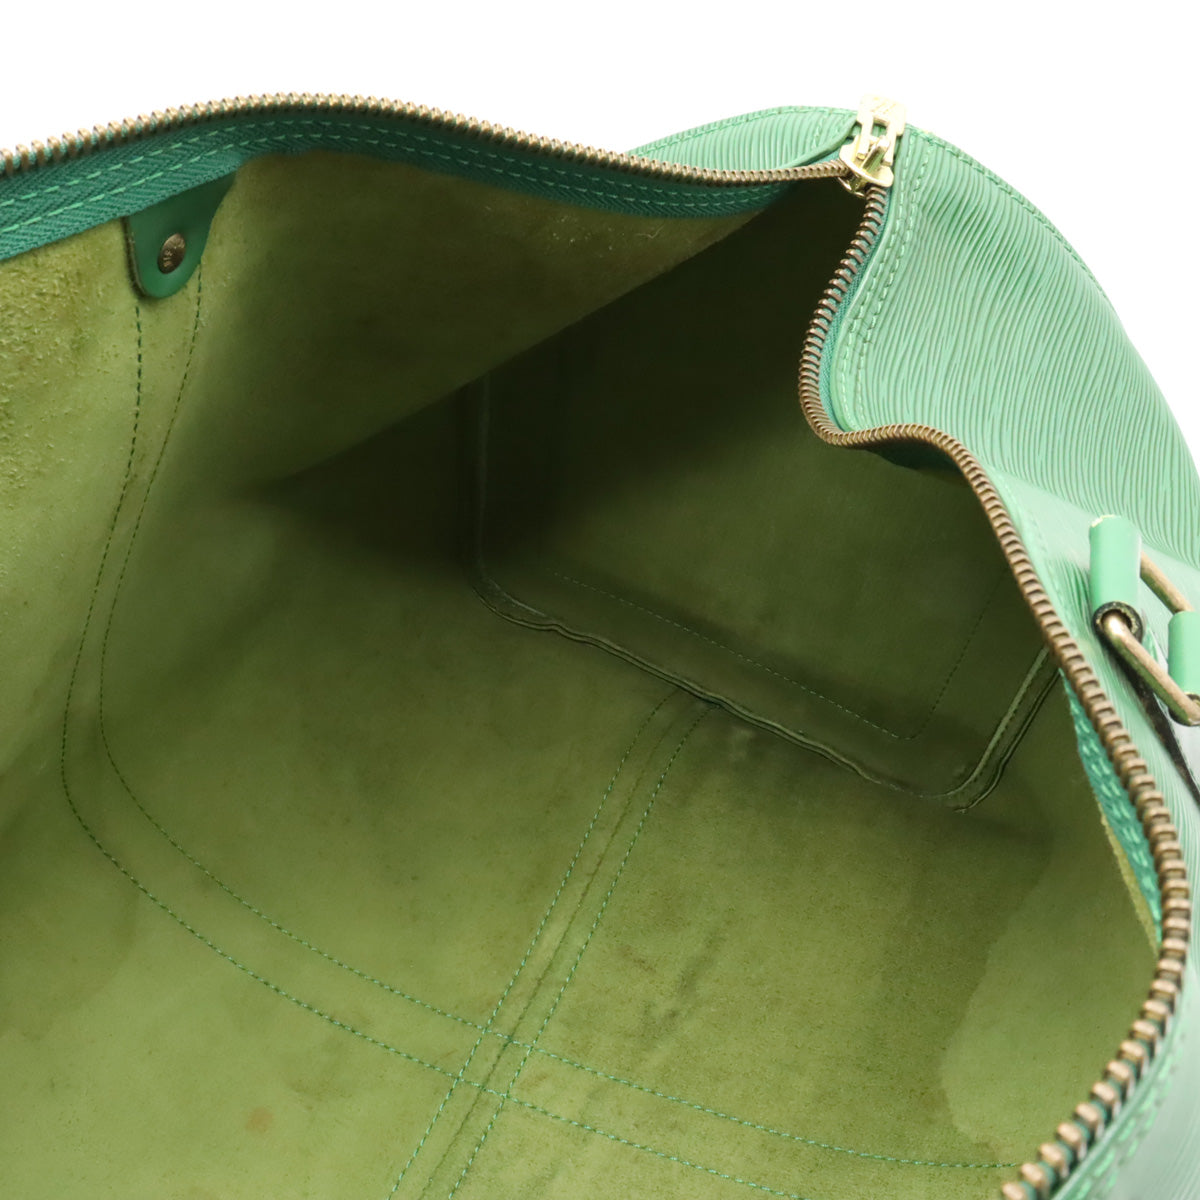 Louis Vuitton Borneo Green Epi Leather Keepall 45 Boston PM Duffle